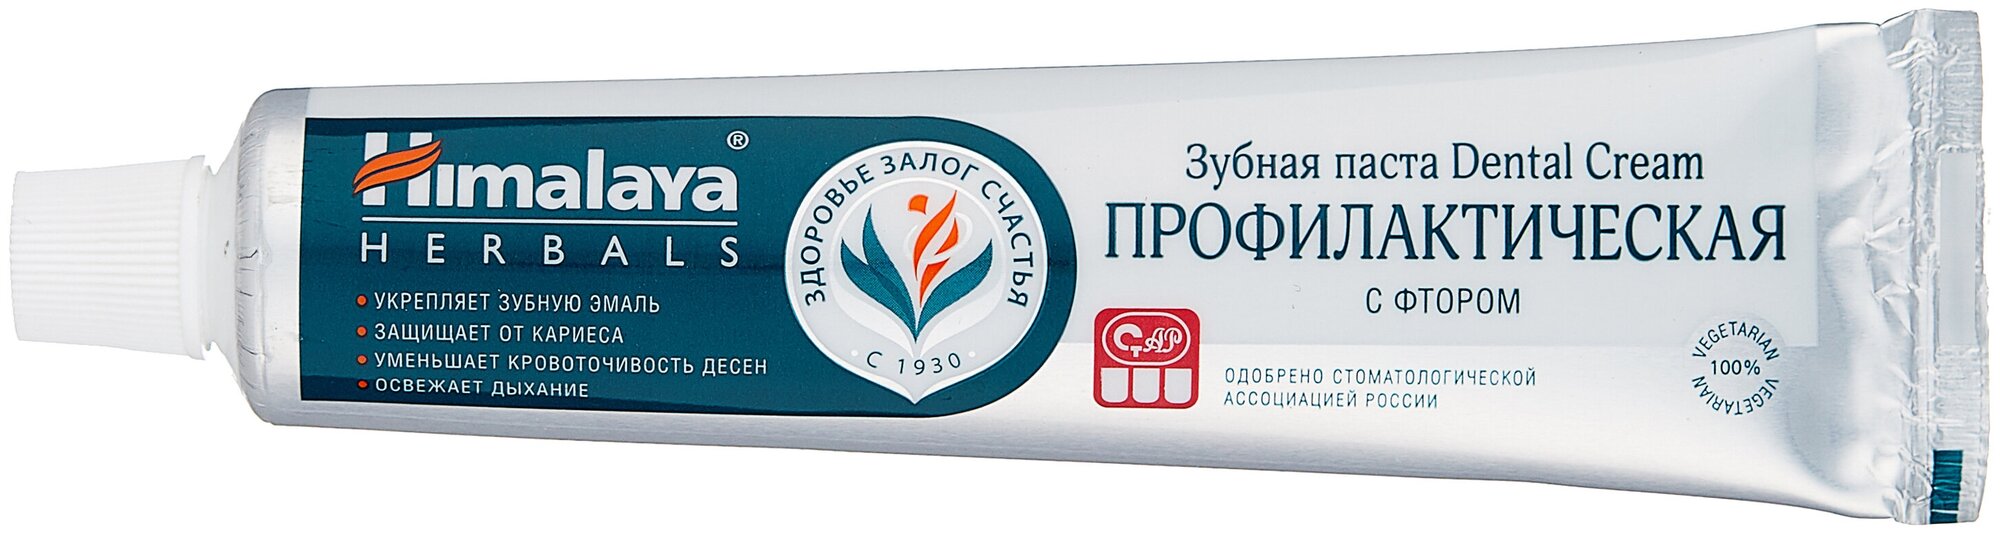 Himalaya Since 1930 Зубная паста Dental Cream "Профилактическая" с фтором защита от кариеса, 100 мл.